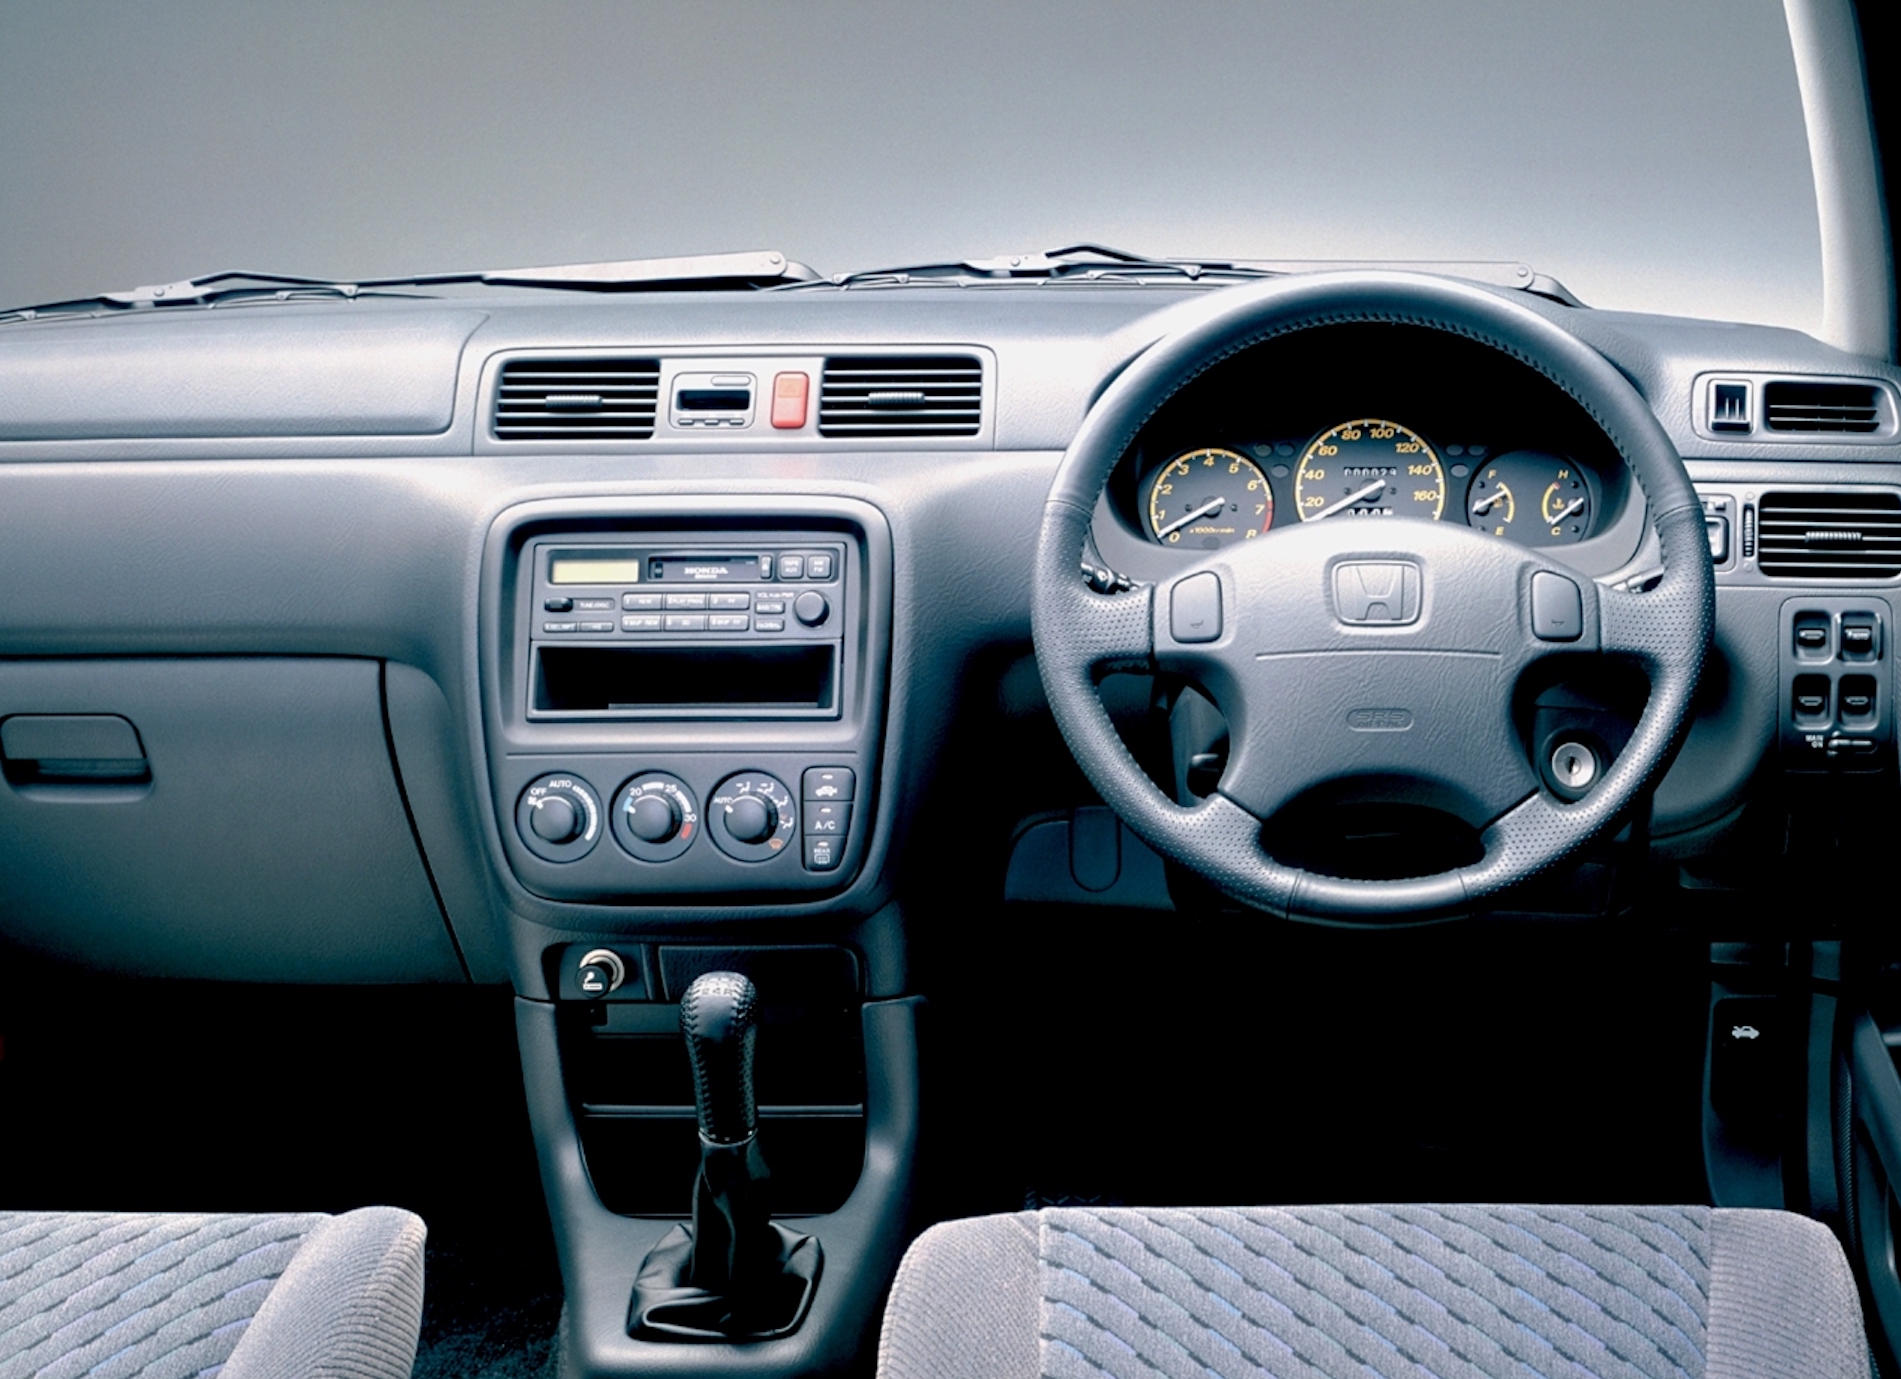 Honda cr v rd5. Honda CR-V rd1 2001. Хонда СРВ 1 поколения салон. Honda CR V 1997 Interior. Honda CRV rd1 1999.